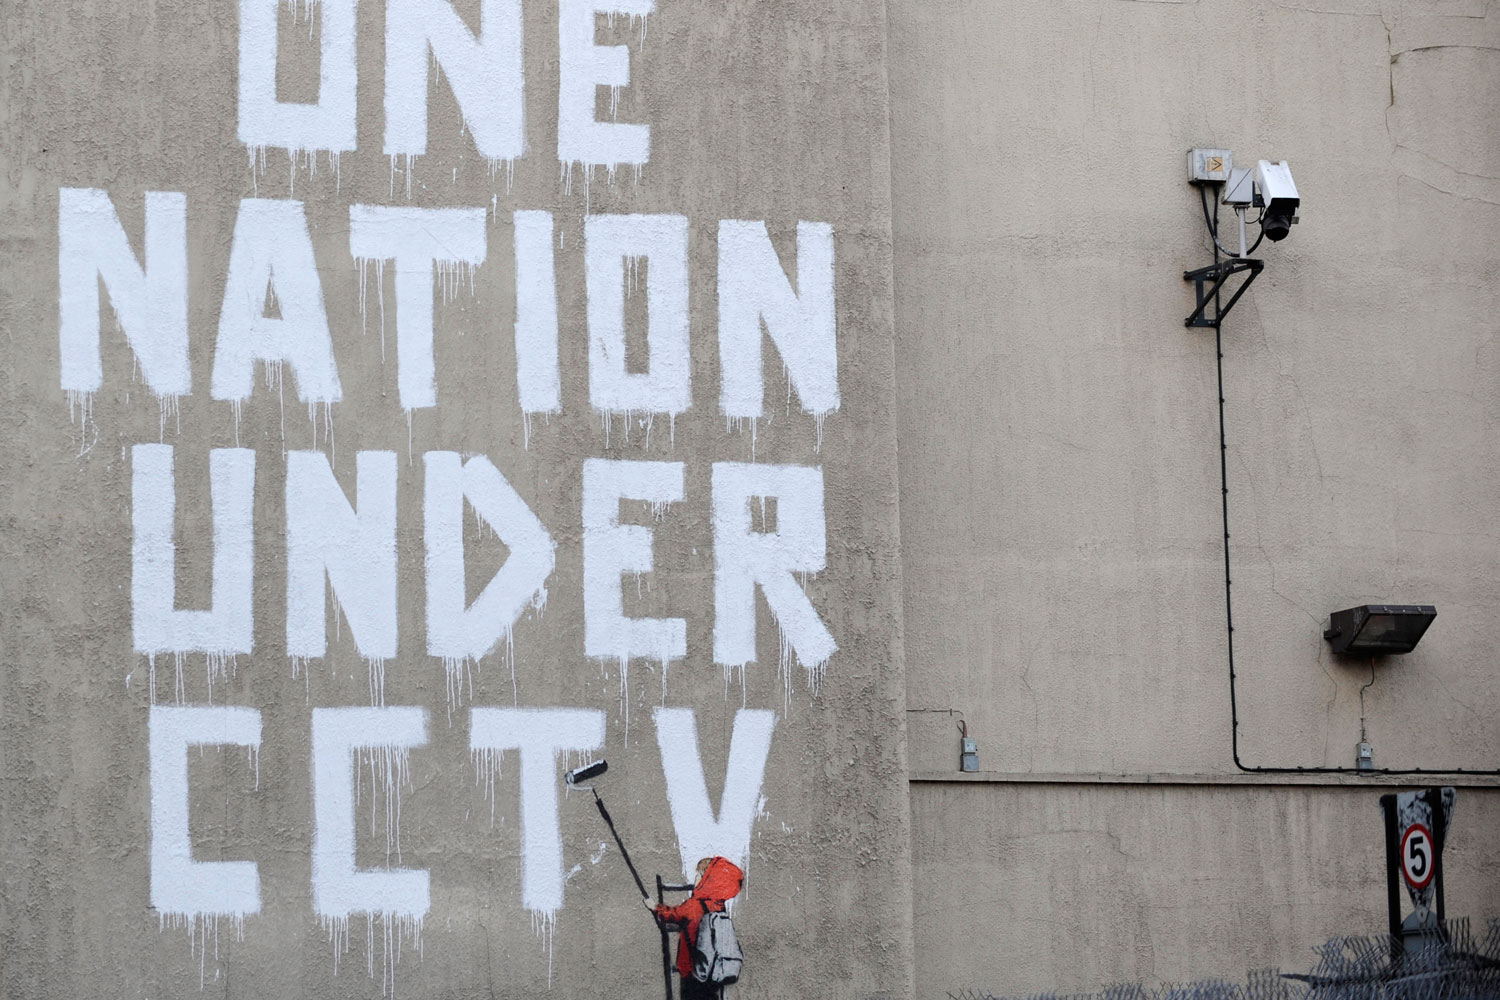 El artista Banksy desafía una cámara de seguridad en 2008